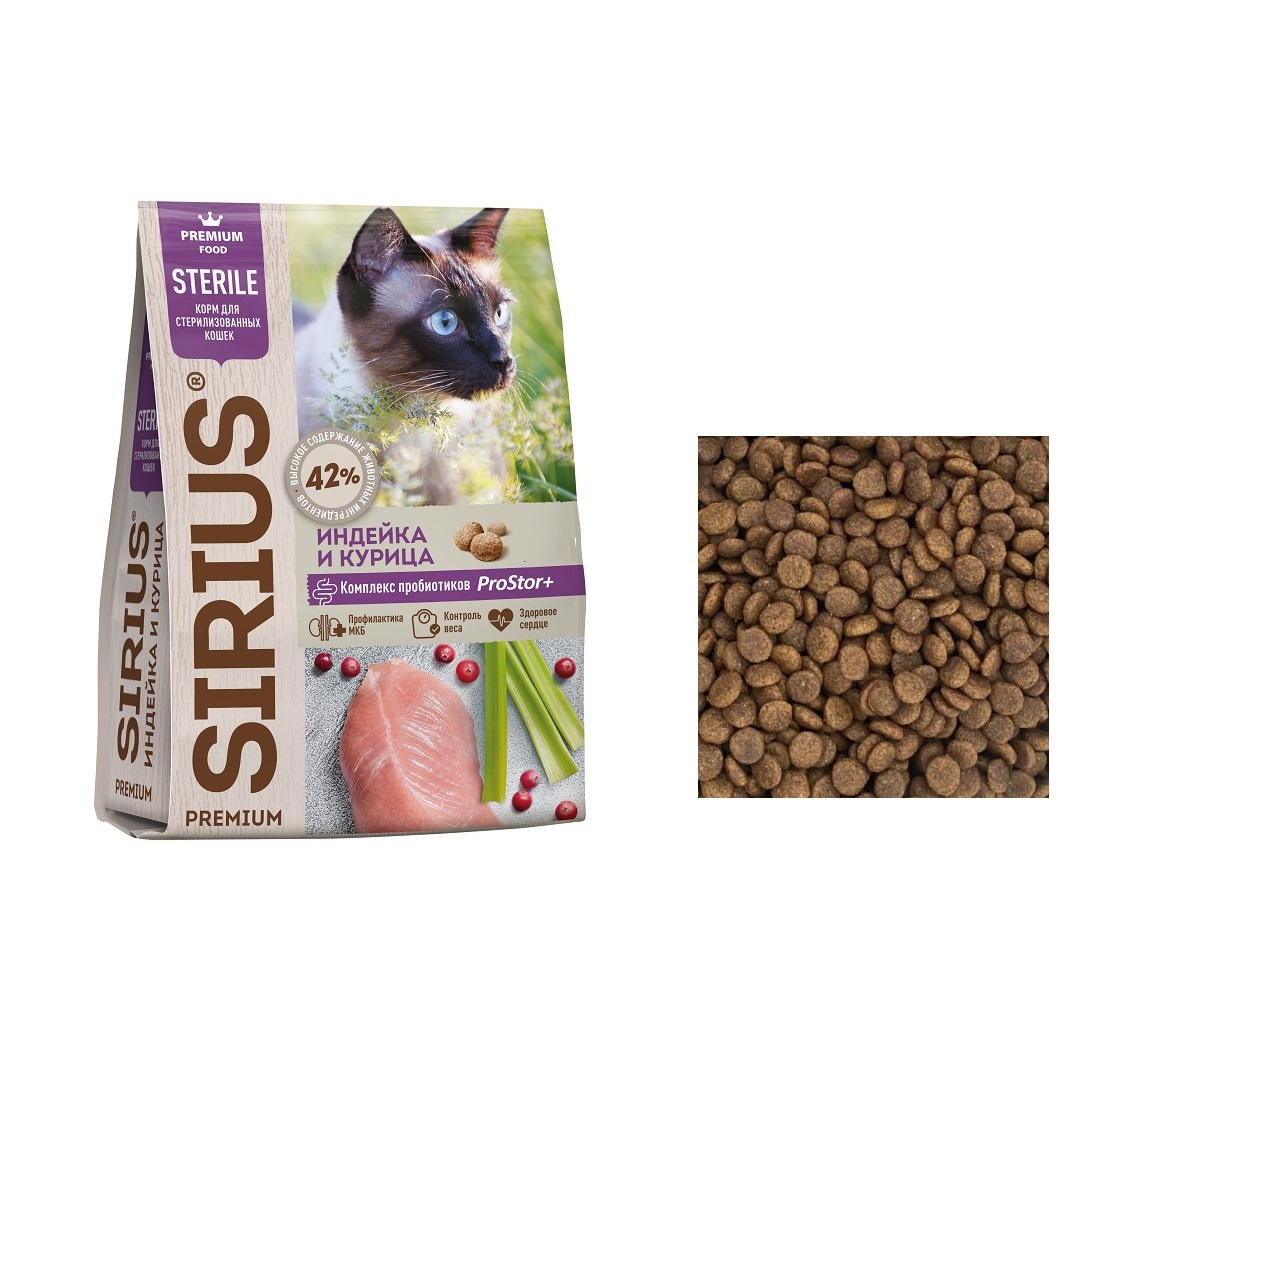 Сириус для кошек Стерилизованных Индейка/Курица (Sirius), весовой 1кг (Sirius)